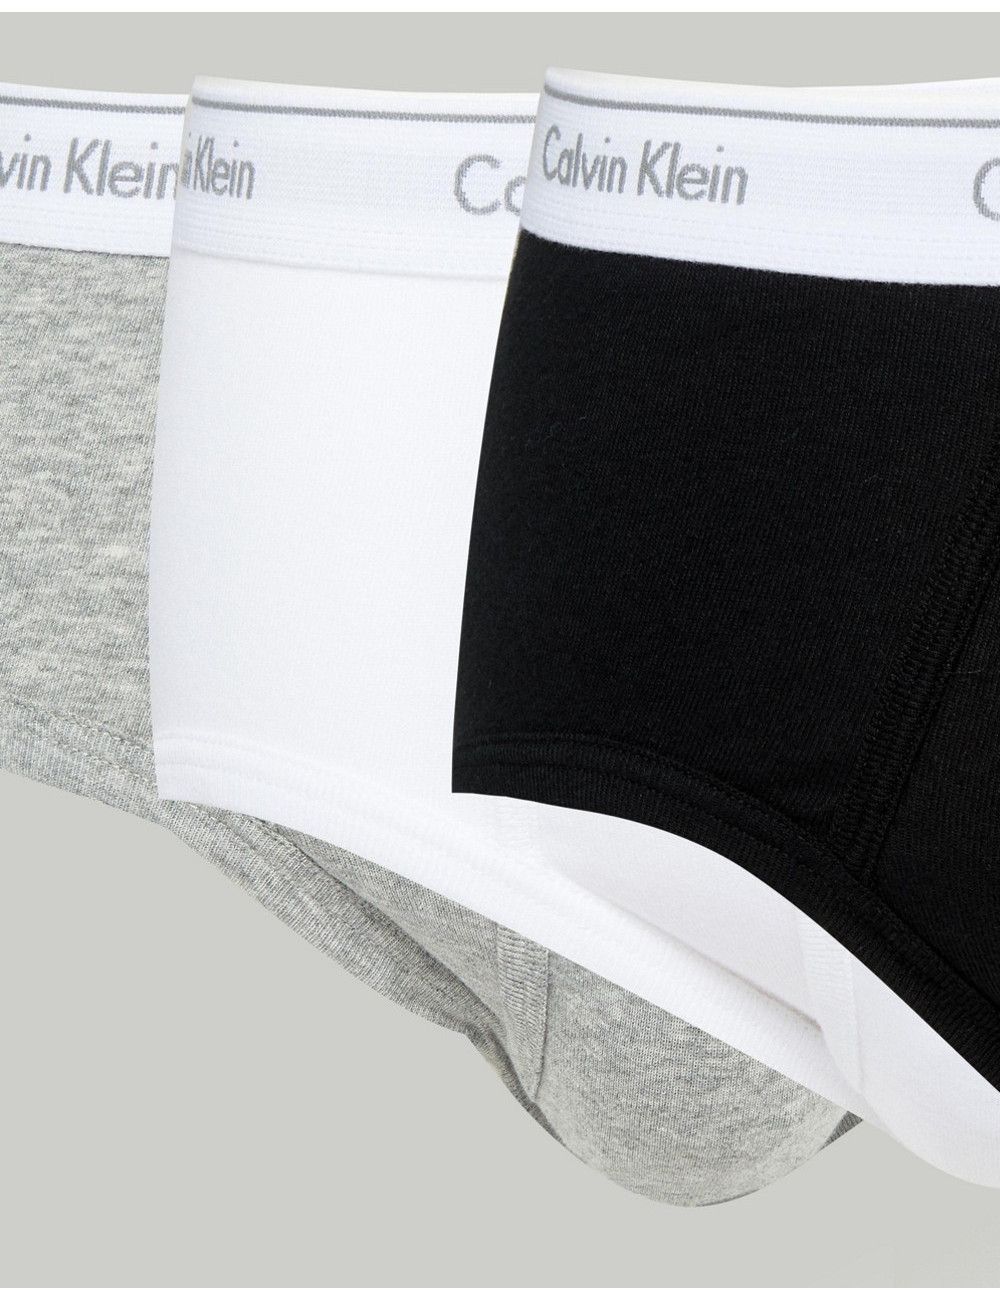 Calvin Klein briefs cotton...